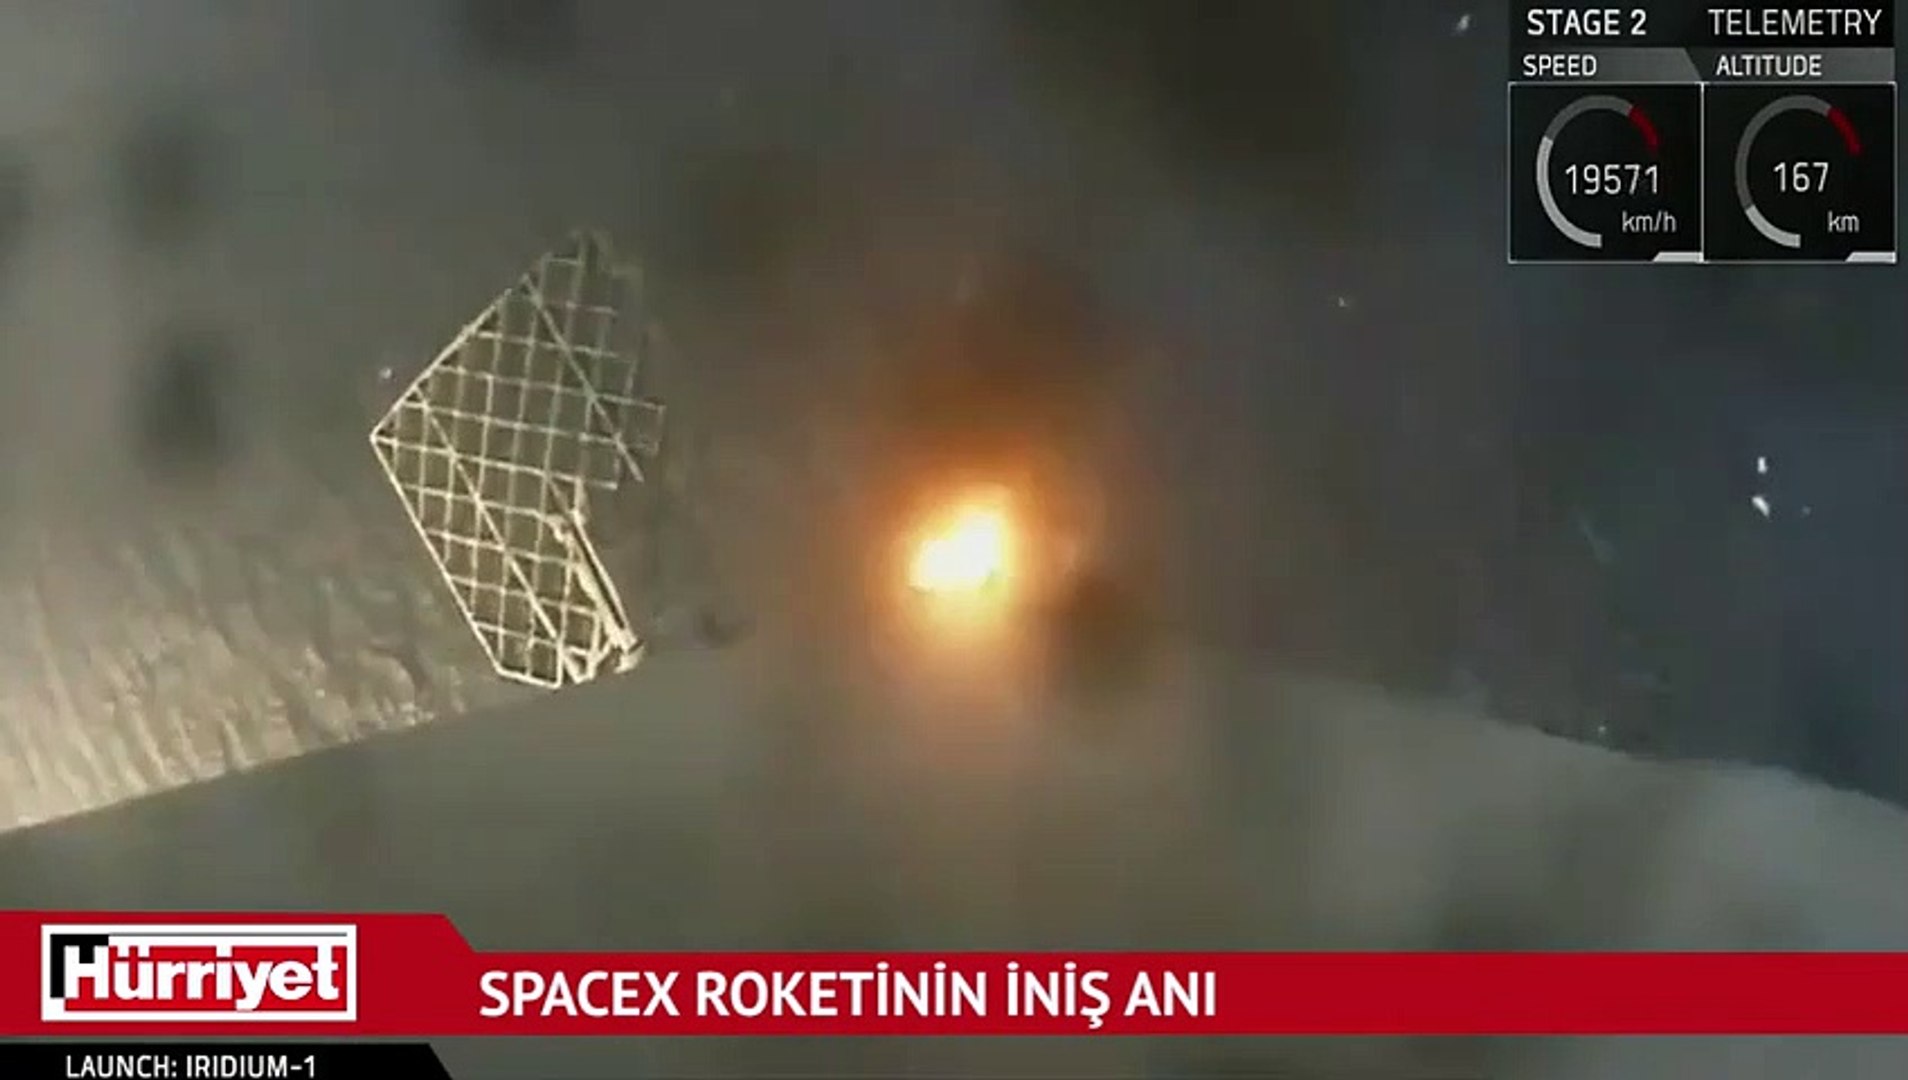 SpaceX's Rocket has just taken off, SpaceX's Yer aldığı Kipp'ın, iki yıl sonra Kipp'ının üzerinde bu